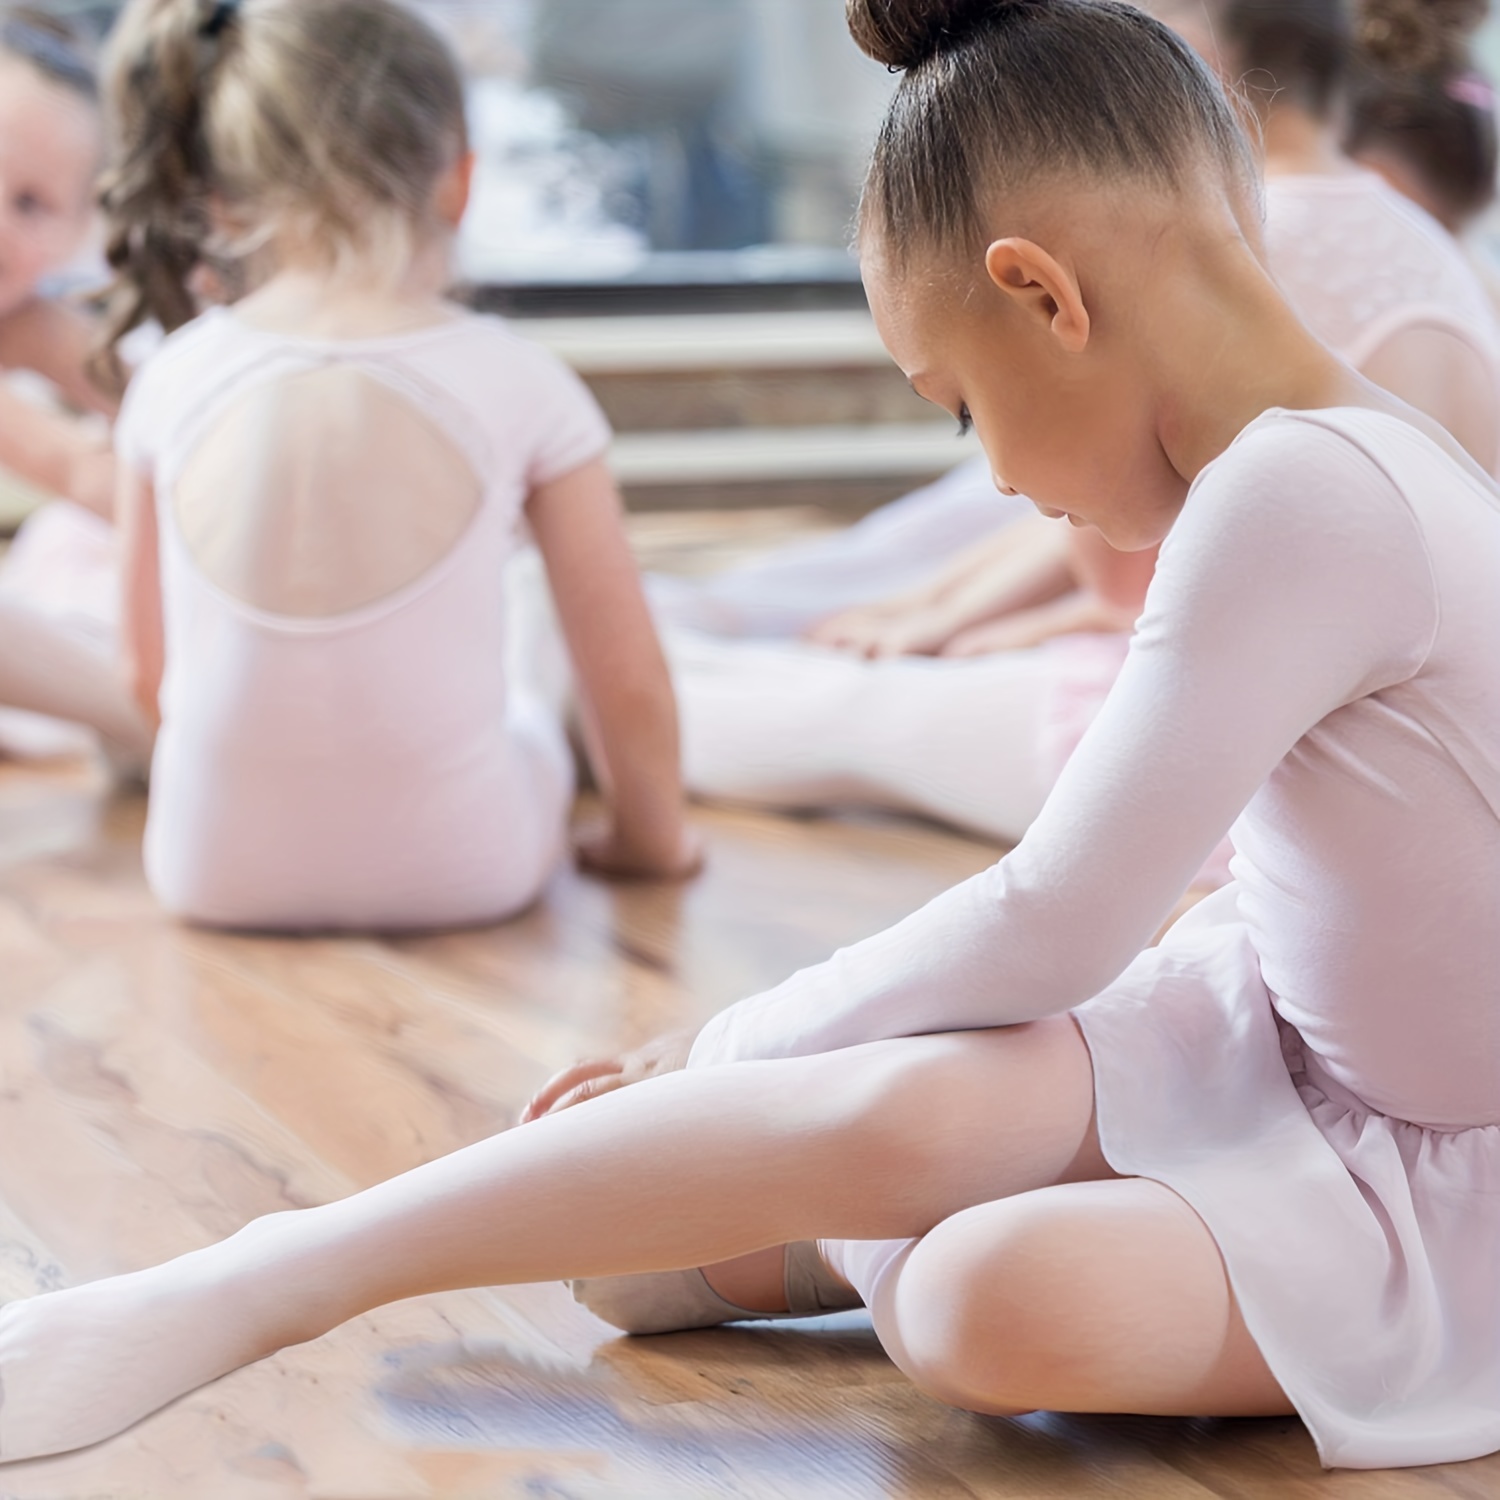 3 pares de medias de ballet para niñas de color sólido, de tela ultra  suave, prenda convertible, para niñas pequeñas y mujeres)